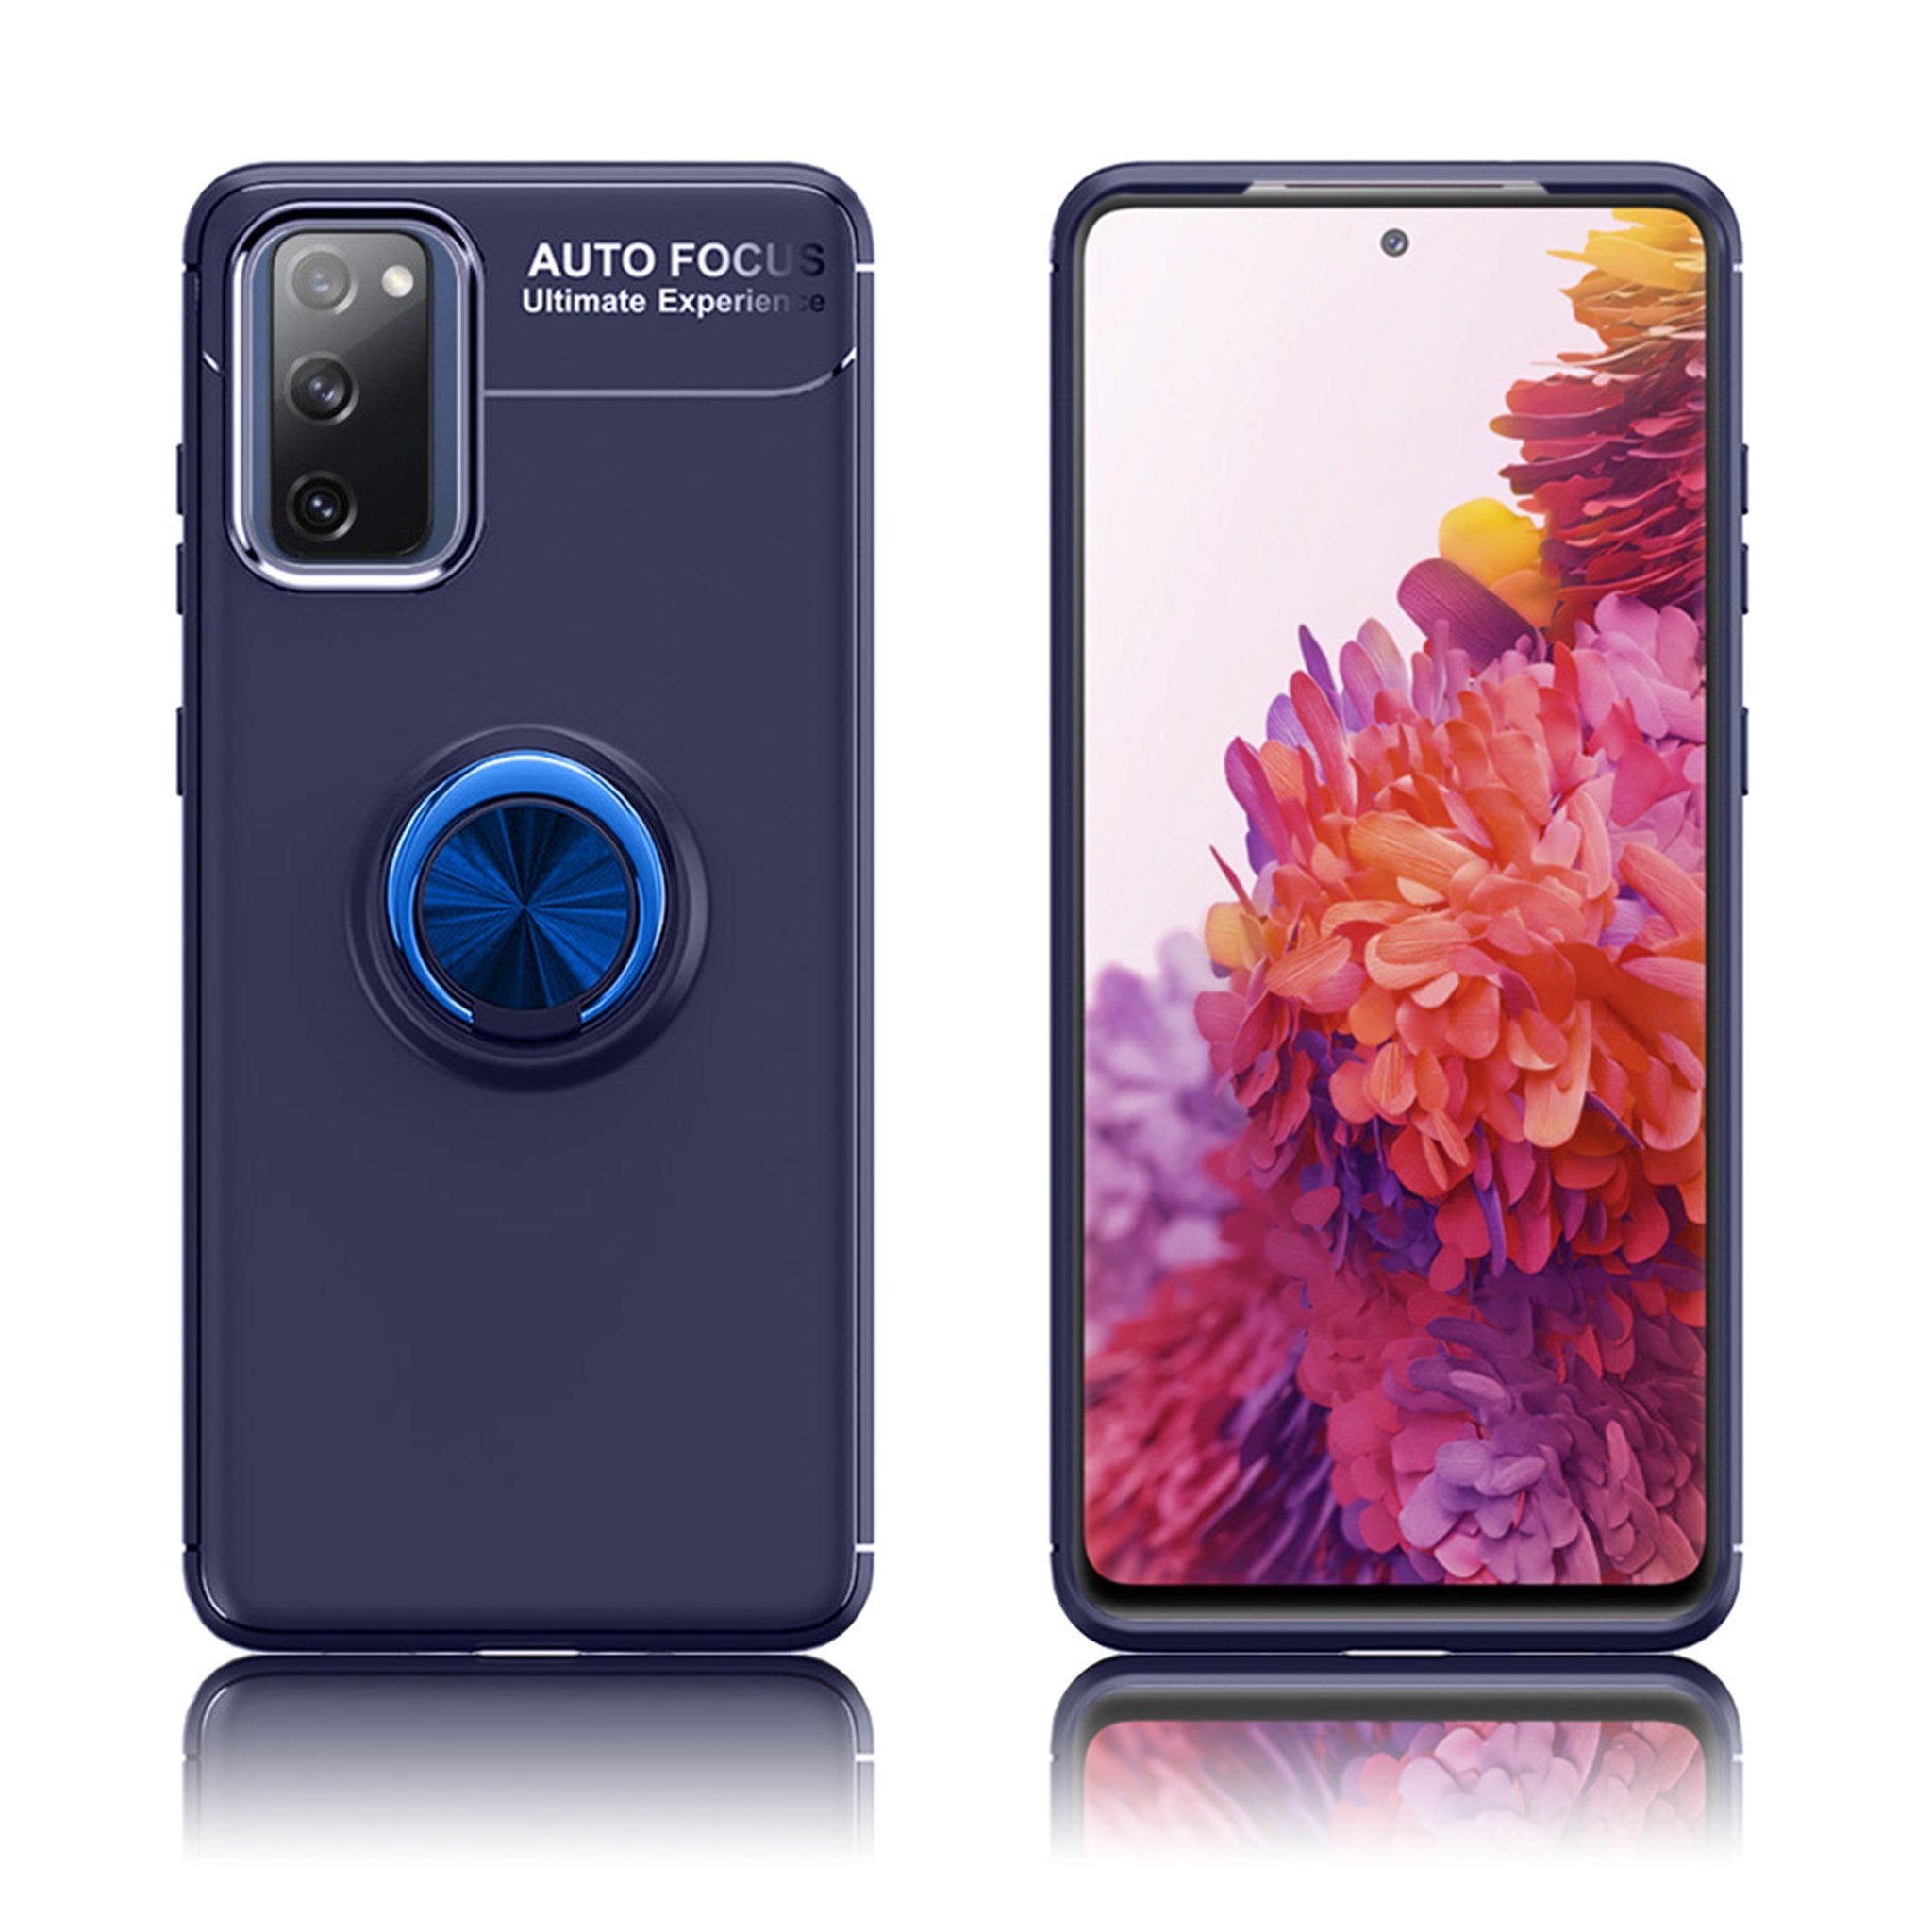 Ringo case - Samsung Galaxy S20 FE - Blue